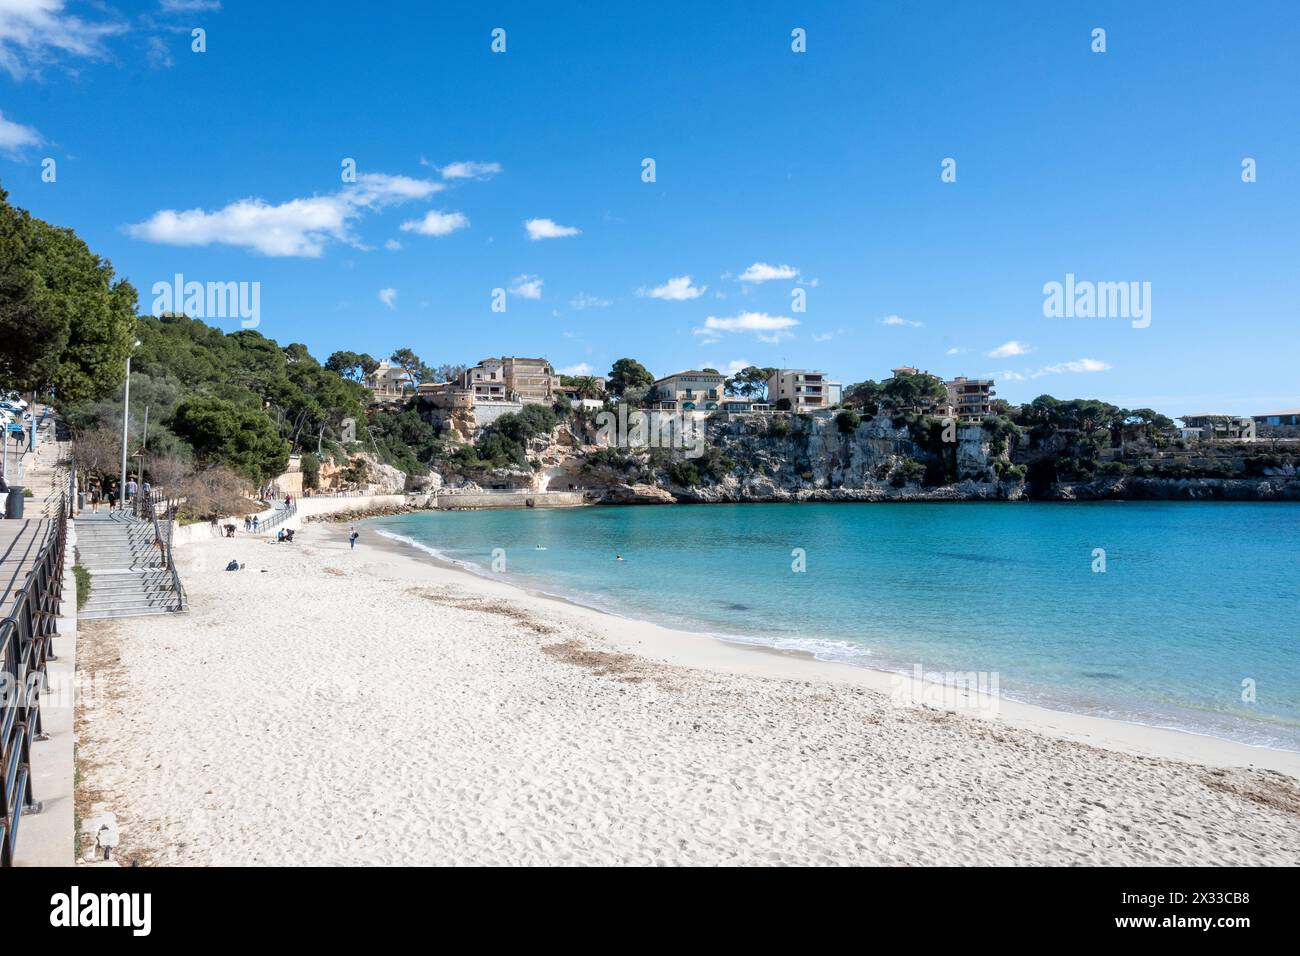 Maiorca, Isole Baleari, Spagna, Platja de Portocristo è una spiaggia di sabbia bianca nel centro di Porto Cristo, solo editoriale. Foto Stock